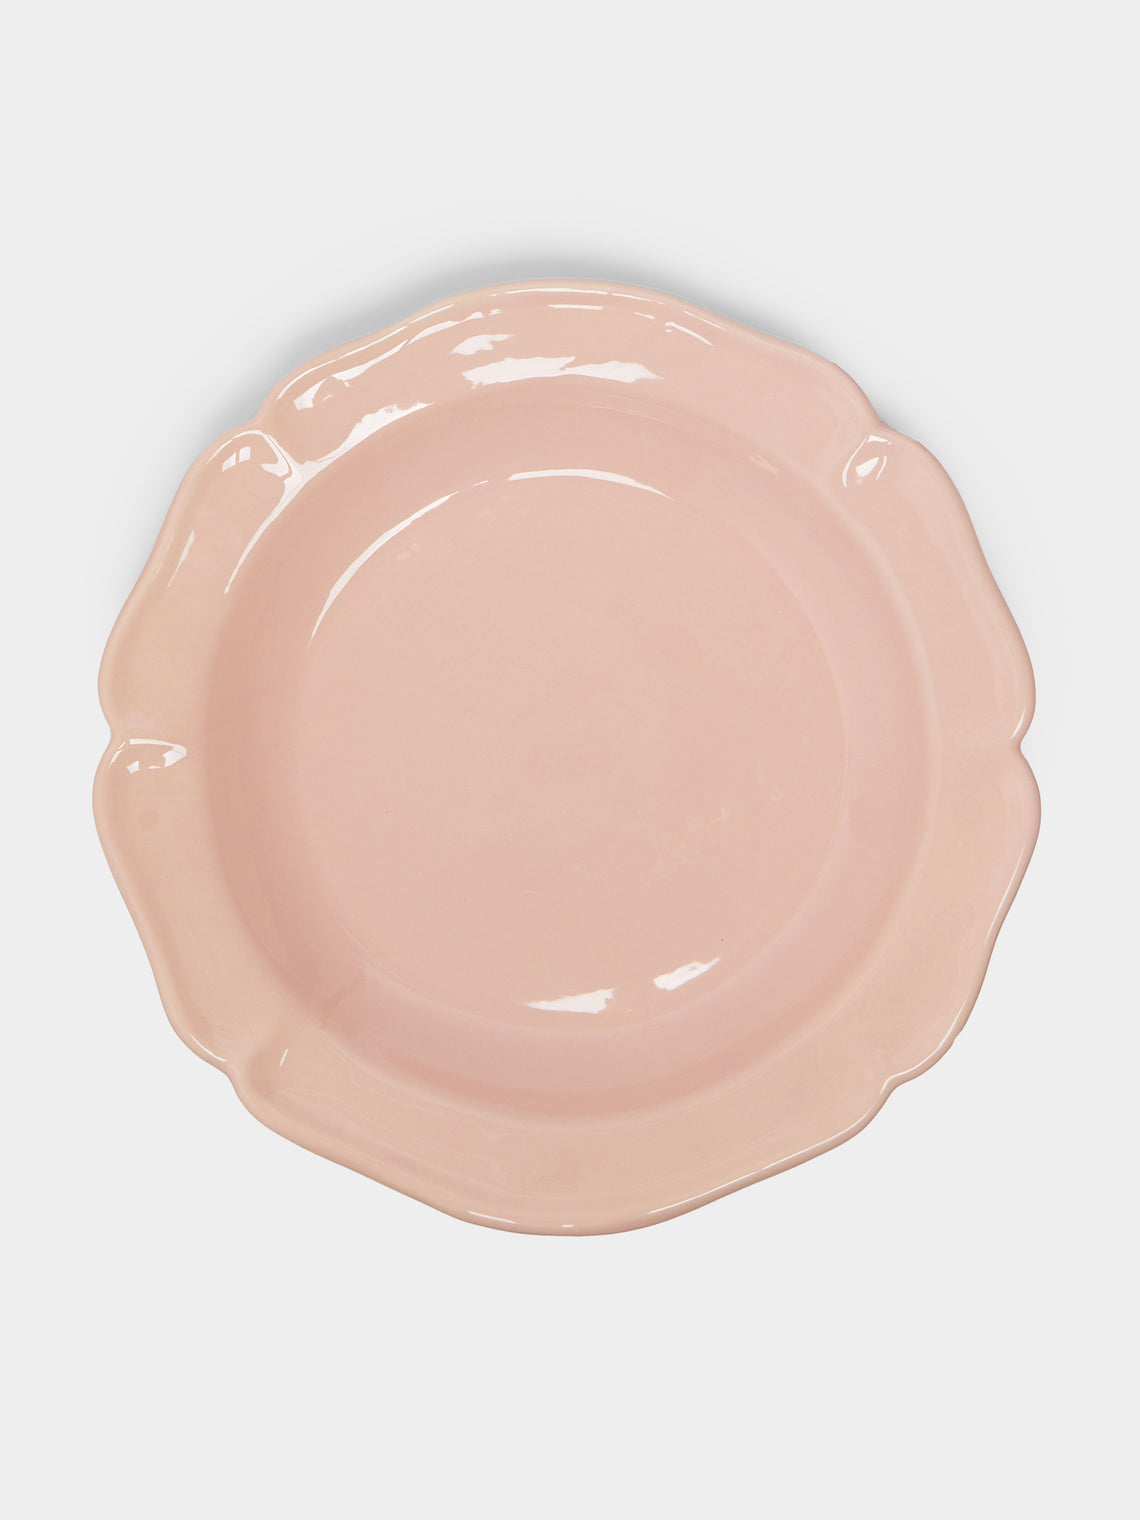 Maison Pichon Uzès - Louis XV Campagne Hand-Glazed Ceramic Serving Plate -  - ABASK - 